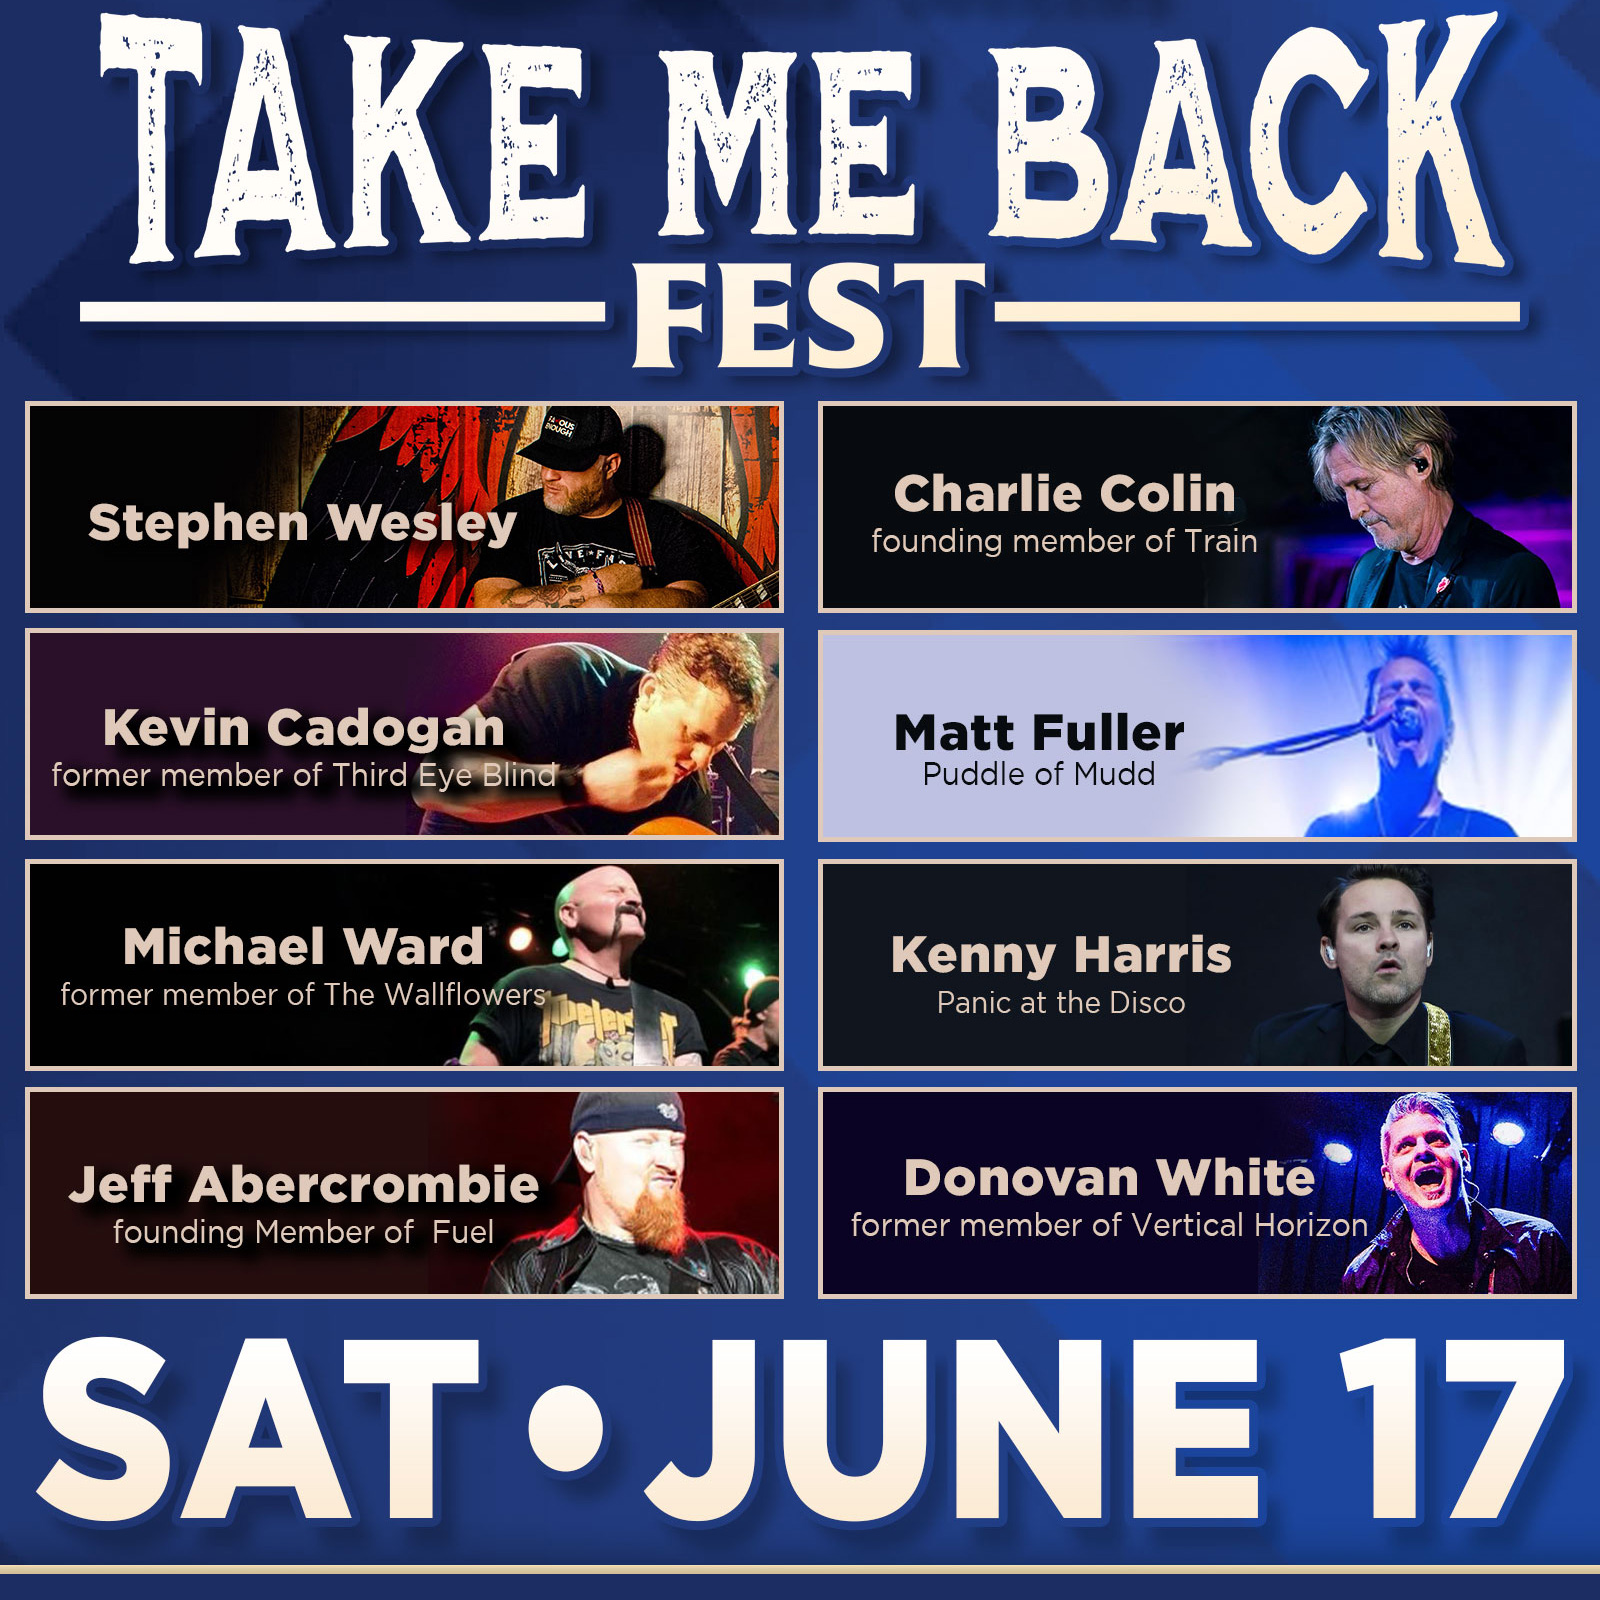 Stephen Wesley’s Take Me Back Fest